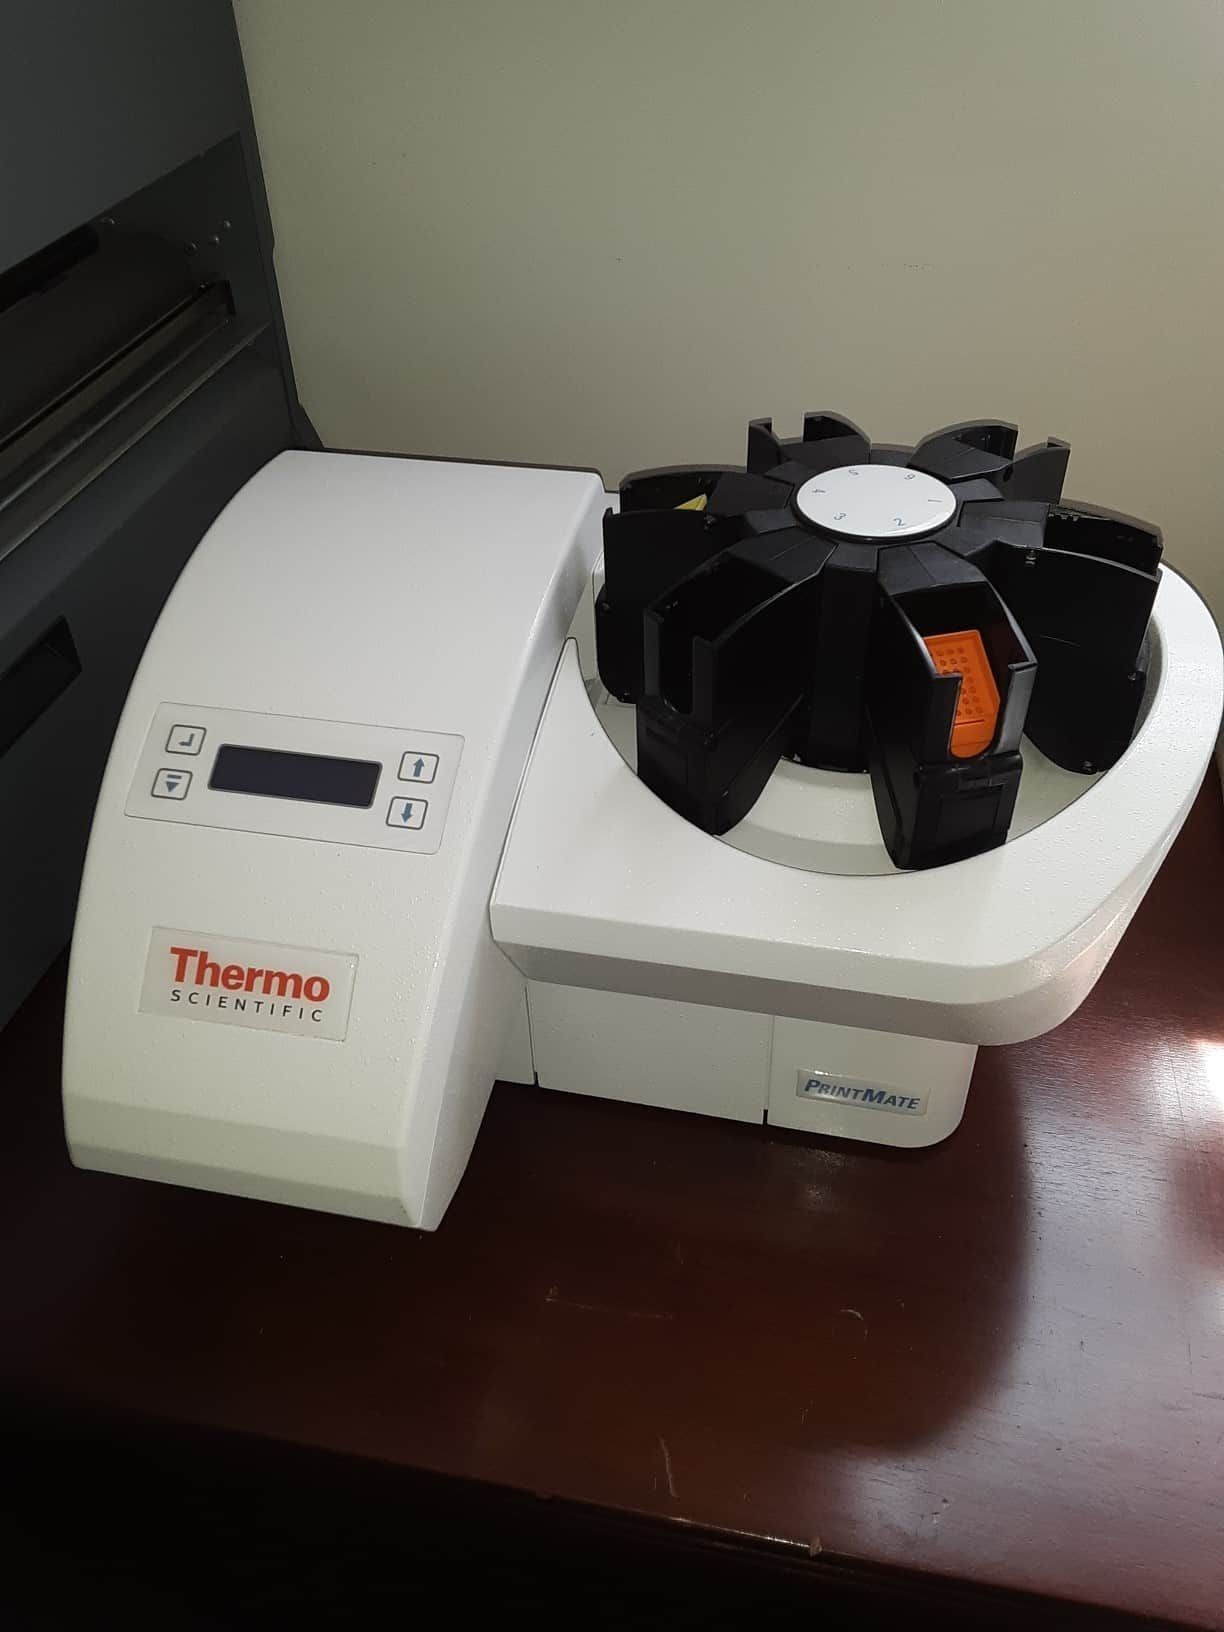 Thermo Printmate 450 cassette printer